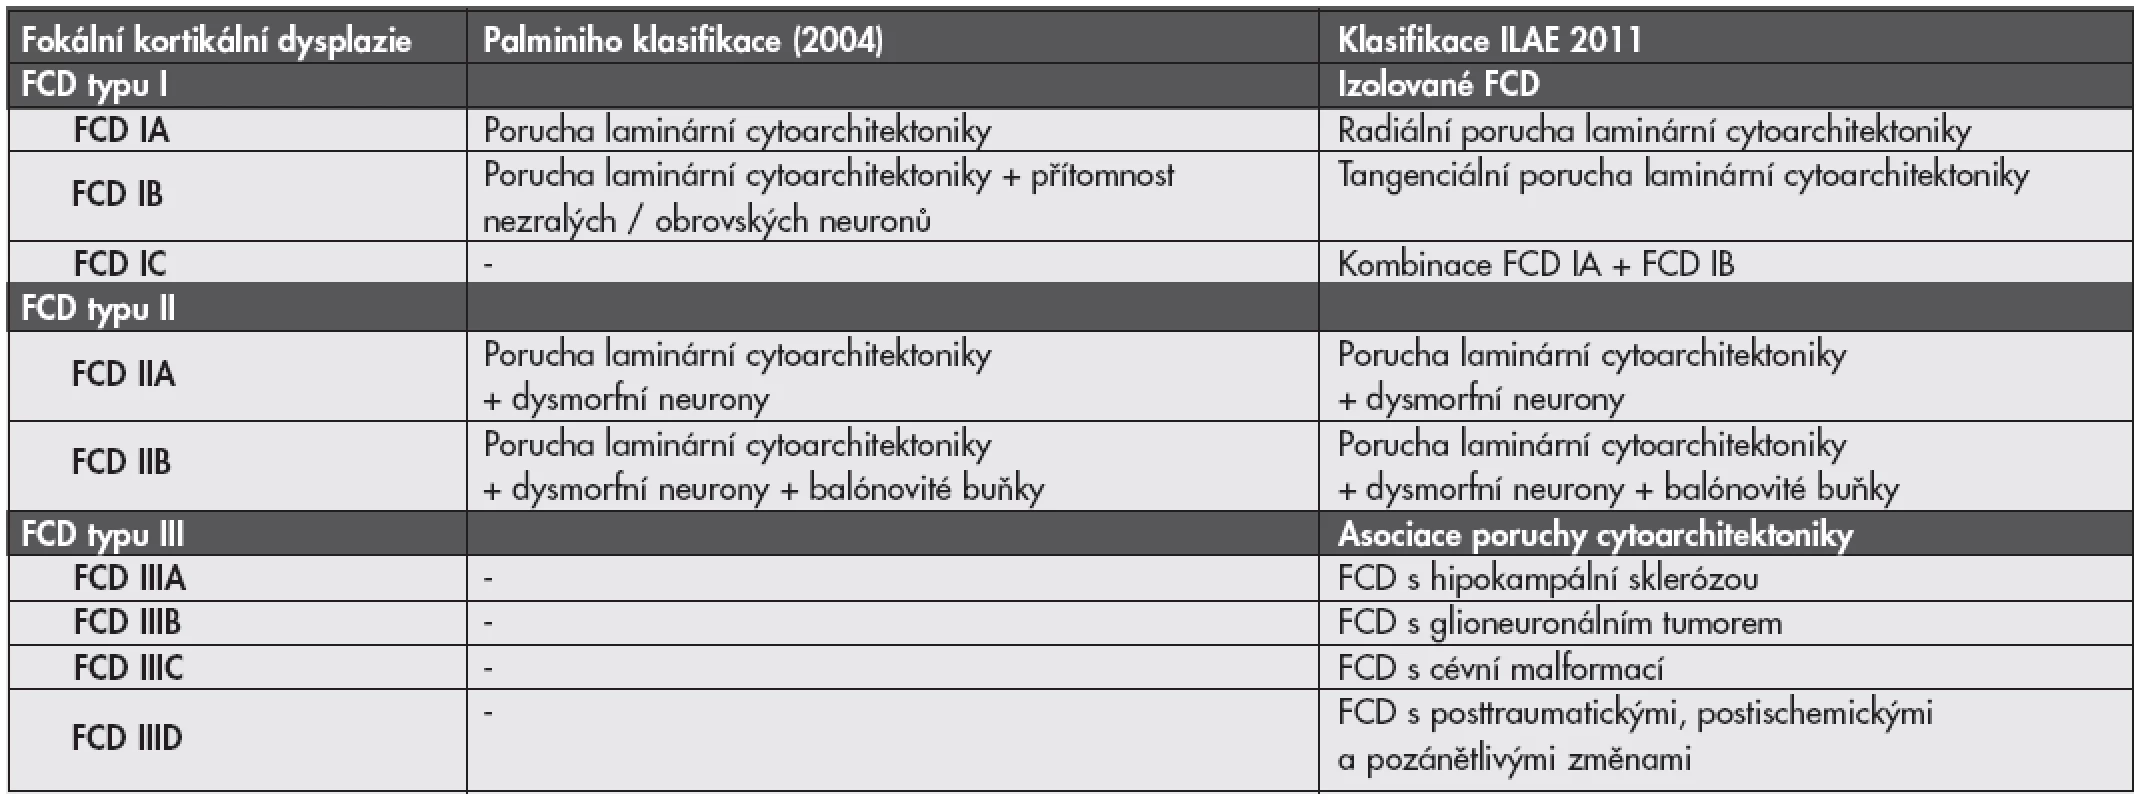 Definice jednotlivých typů fokálních kortikálních dysplazií (FCD) podle Palminiho klasifikace z roku 2004 v porovnání s novou klasifikací ILAE 2011.